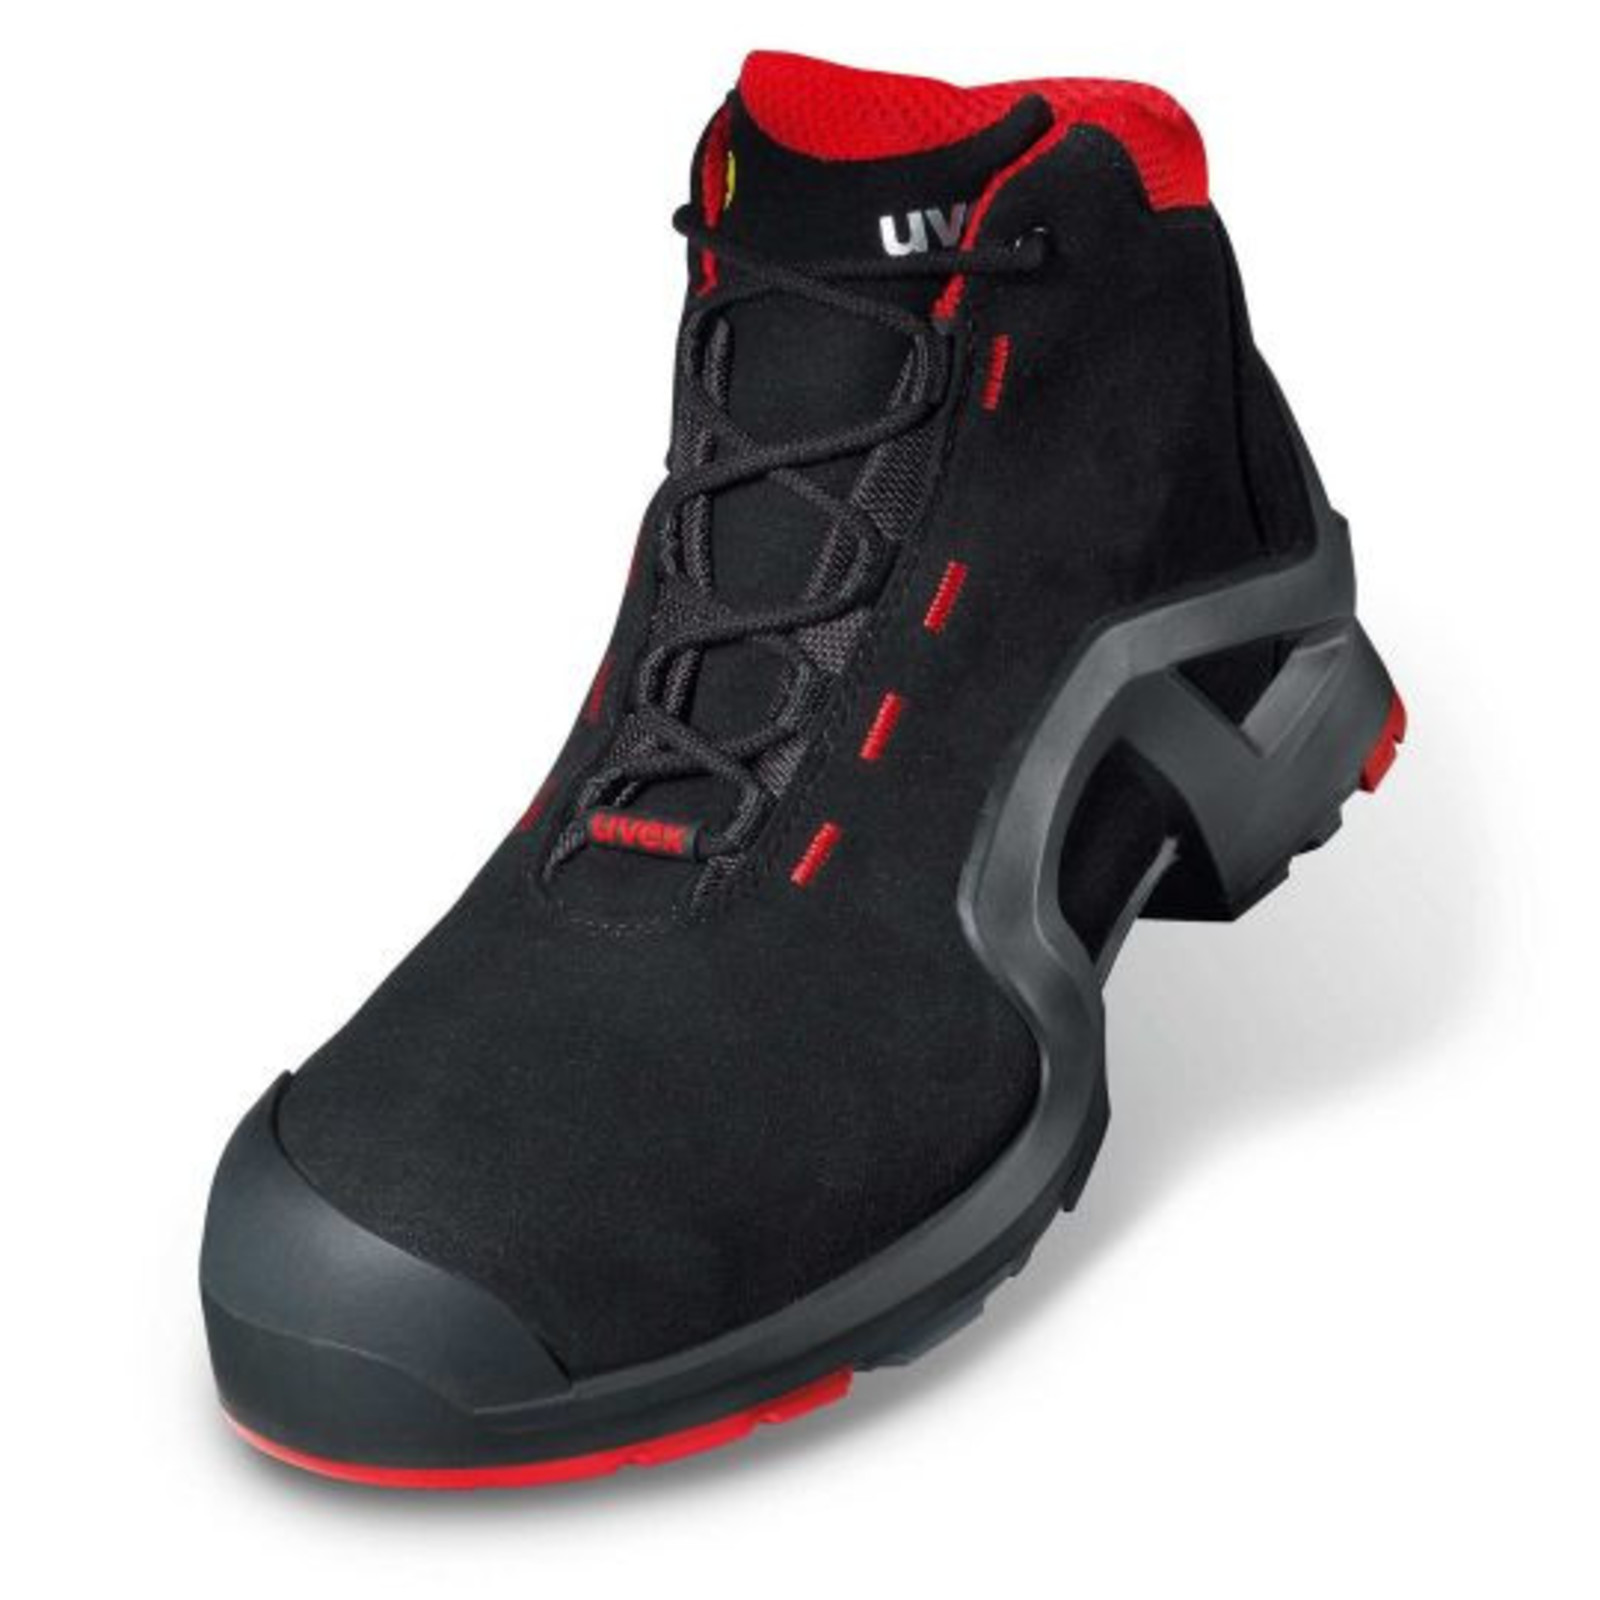 Vysoká bezpečnostná obuv Uvex 1 x-tended support S3 85172 - veľkosť: 38, farba: čierna/červená